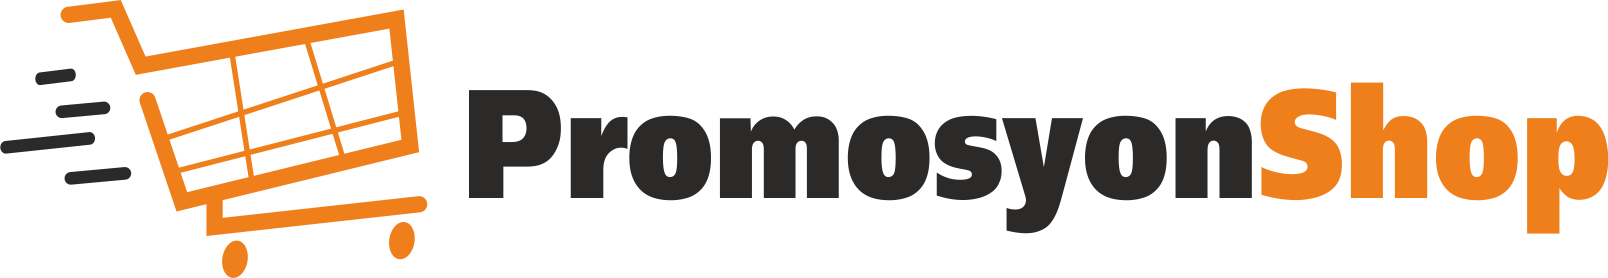 Promosyonshop: Promosyon ve Promosyon Ürünleri